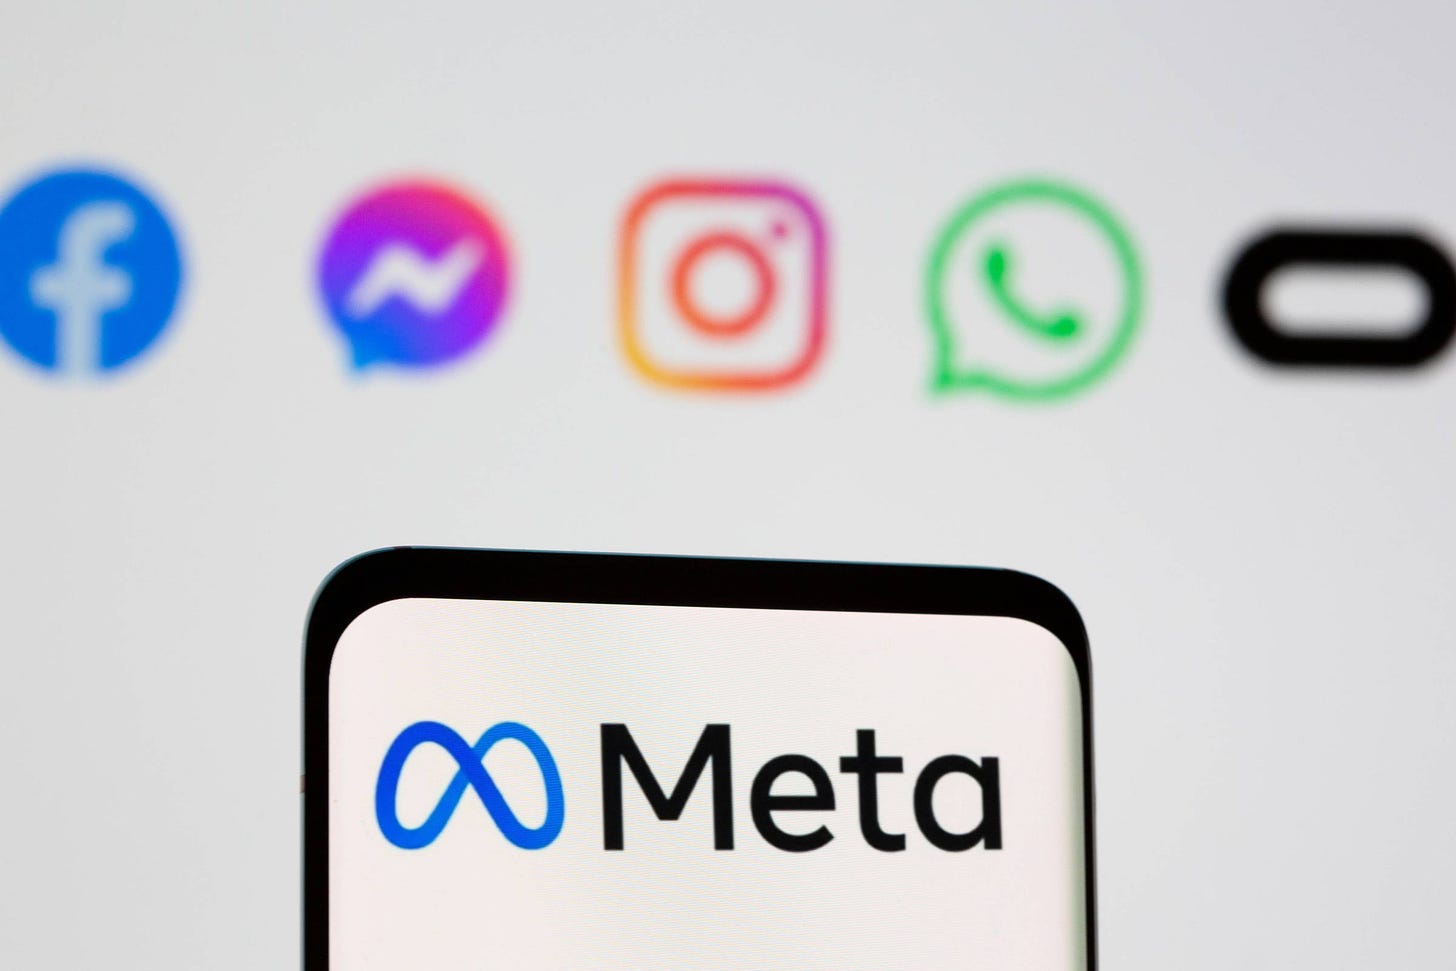 Dona do Facebook compra direitos do nome 'Meta' por US$ 60 mi - 13/12/2021  - Mercado - Folha